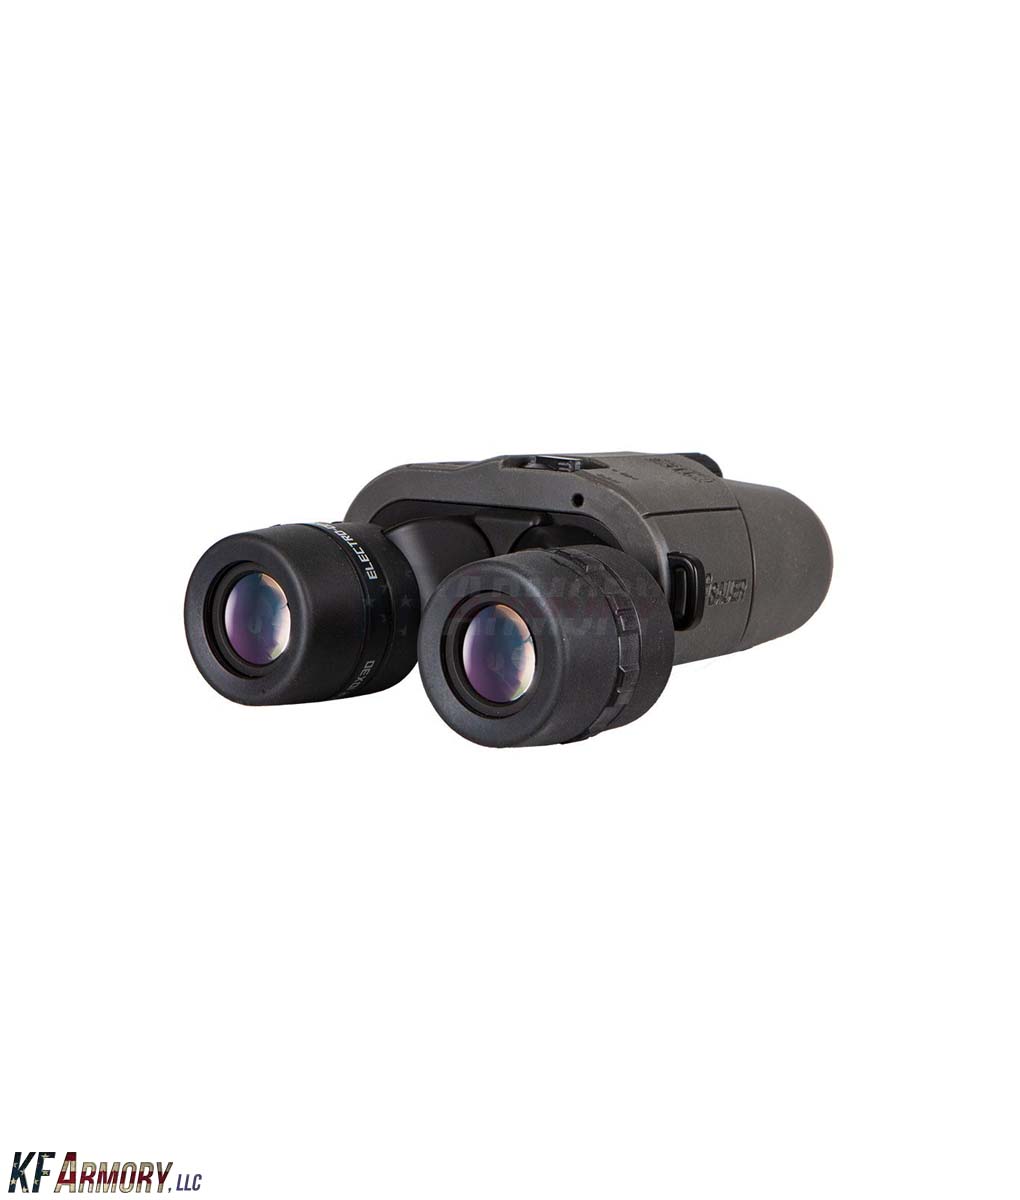 SIG Sauer ZULU6 16x42mm Image Stabilized Binocular – KF Armory, LLC